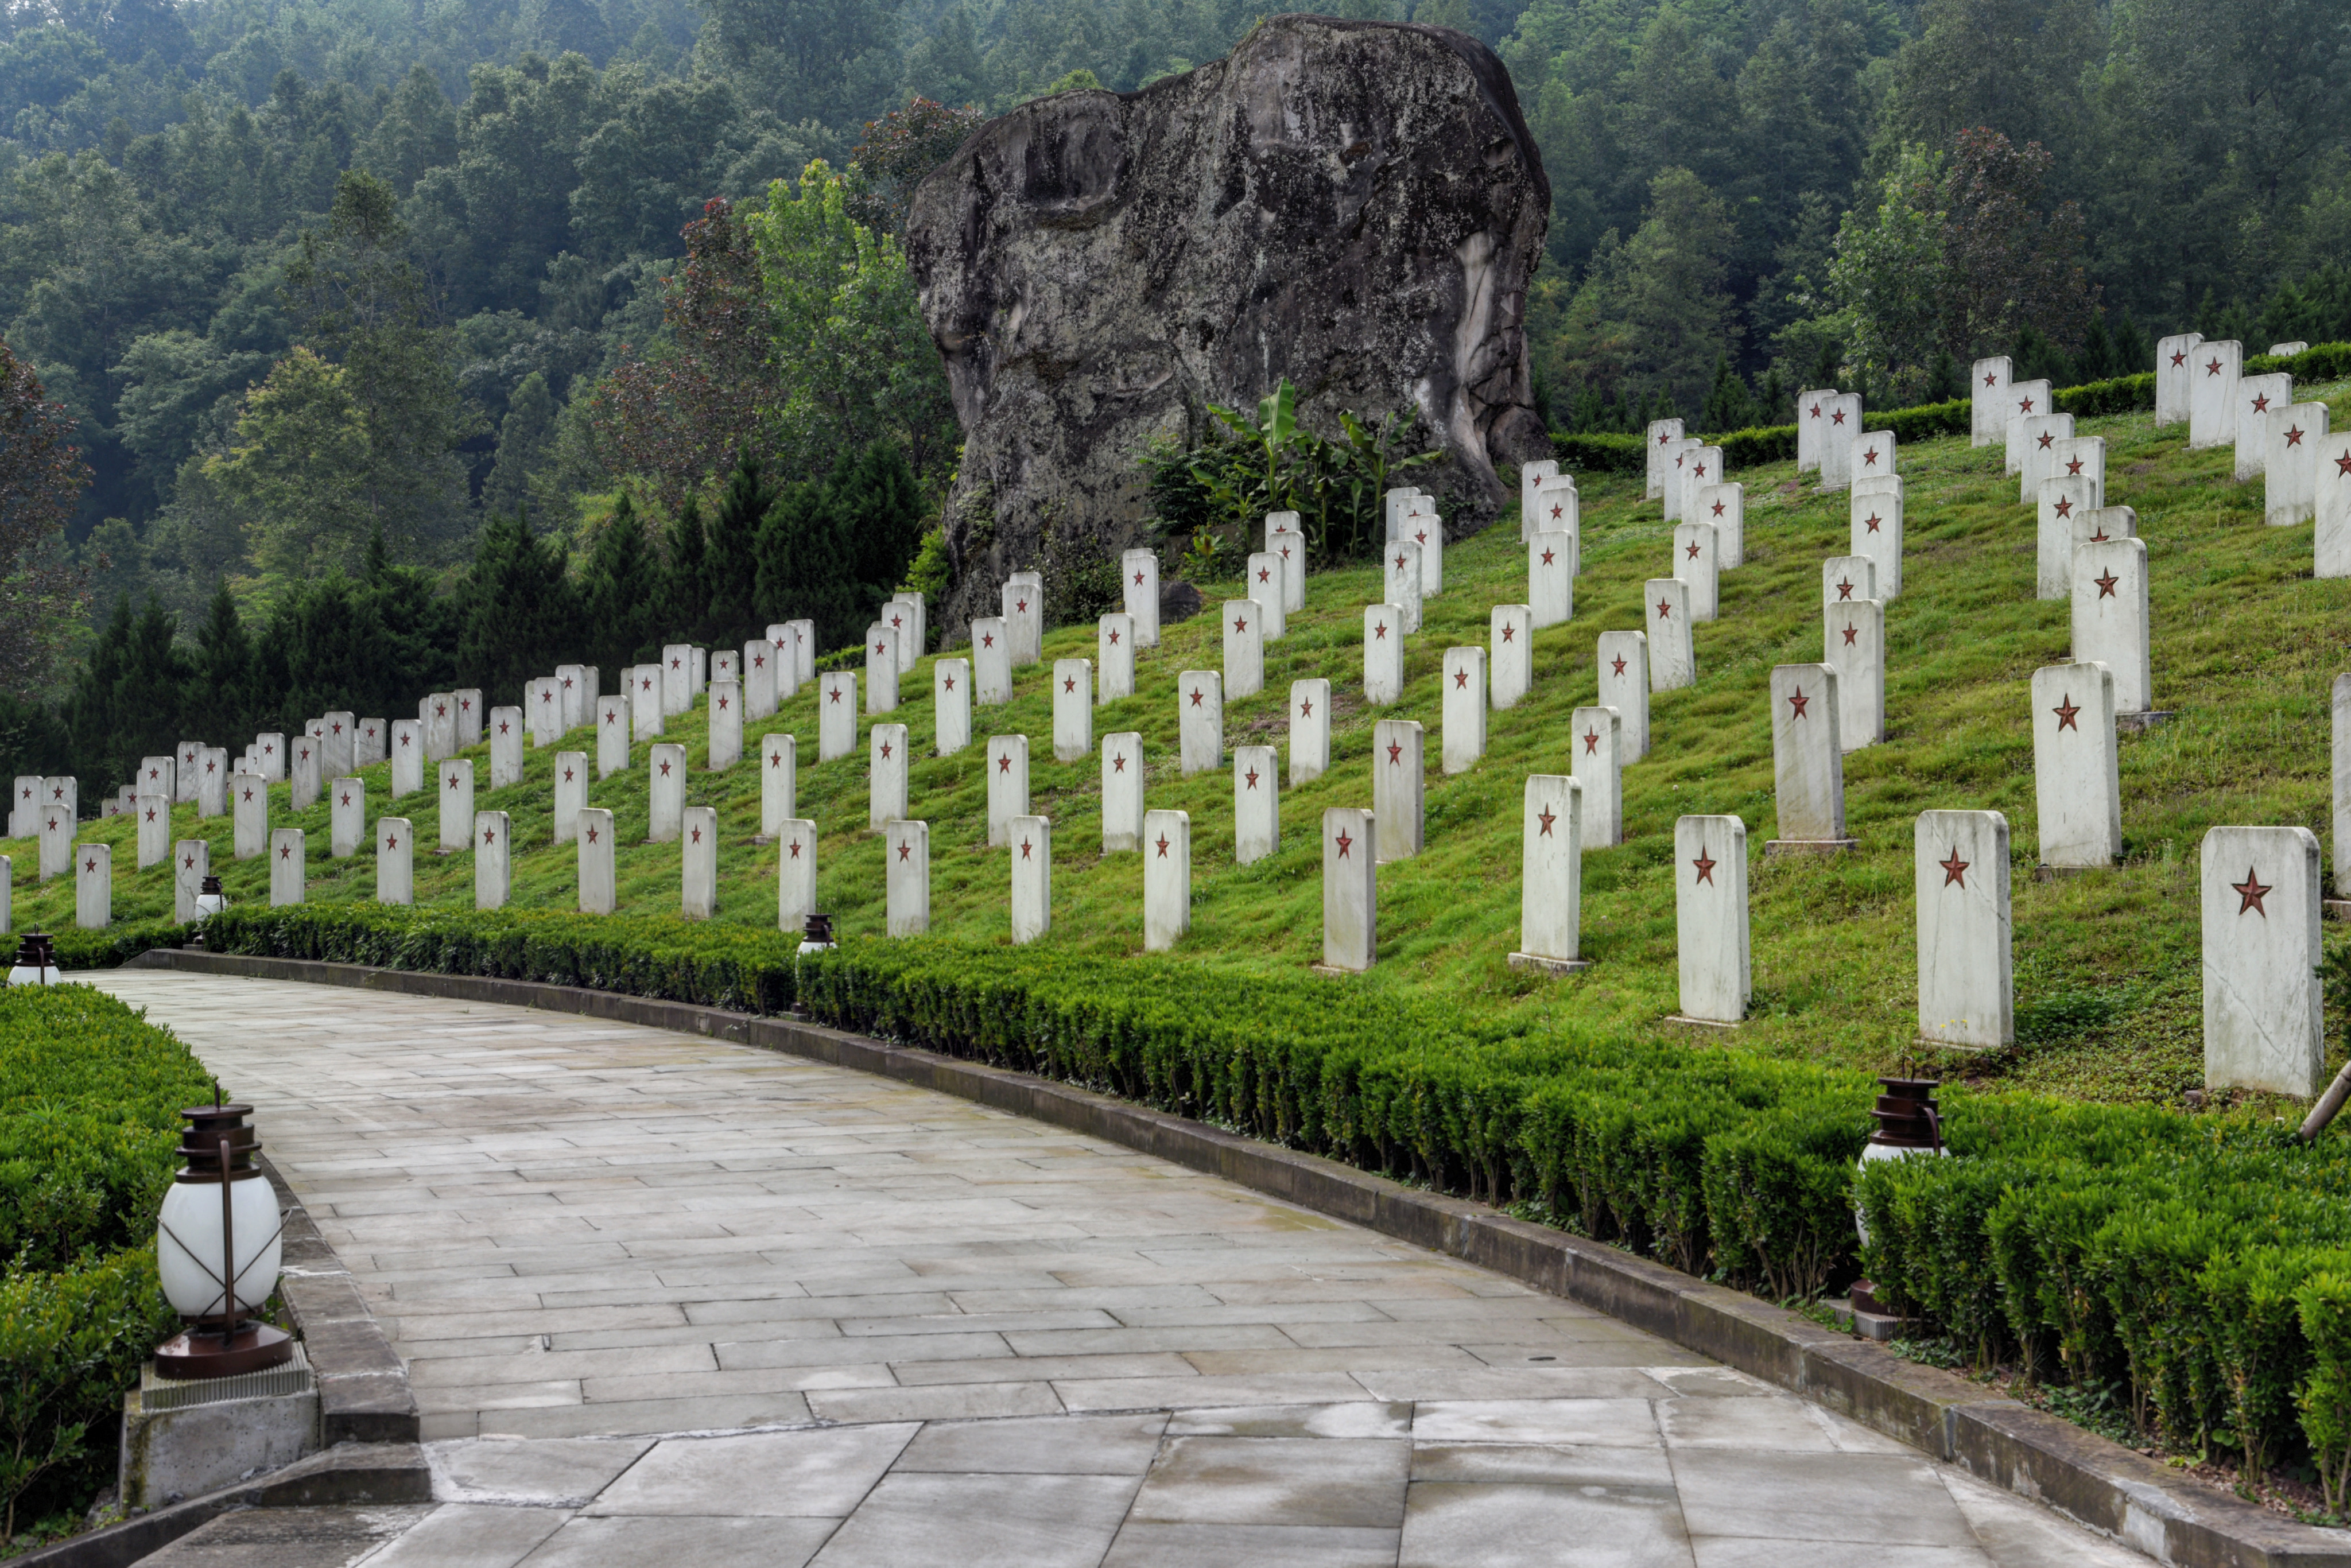 全国最大的红军烈士陵园,长眠着25048名烈士,红军后人为之守墓